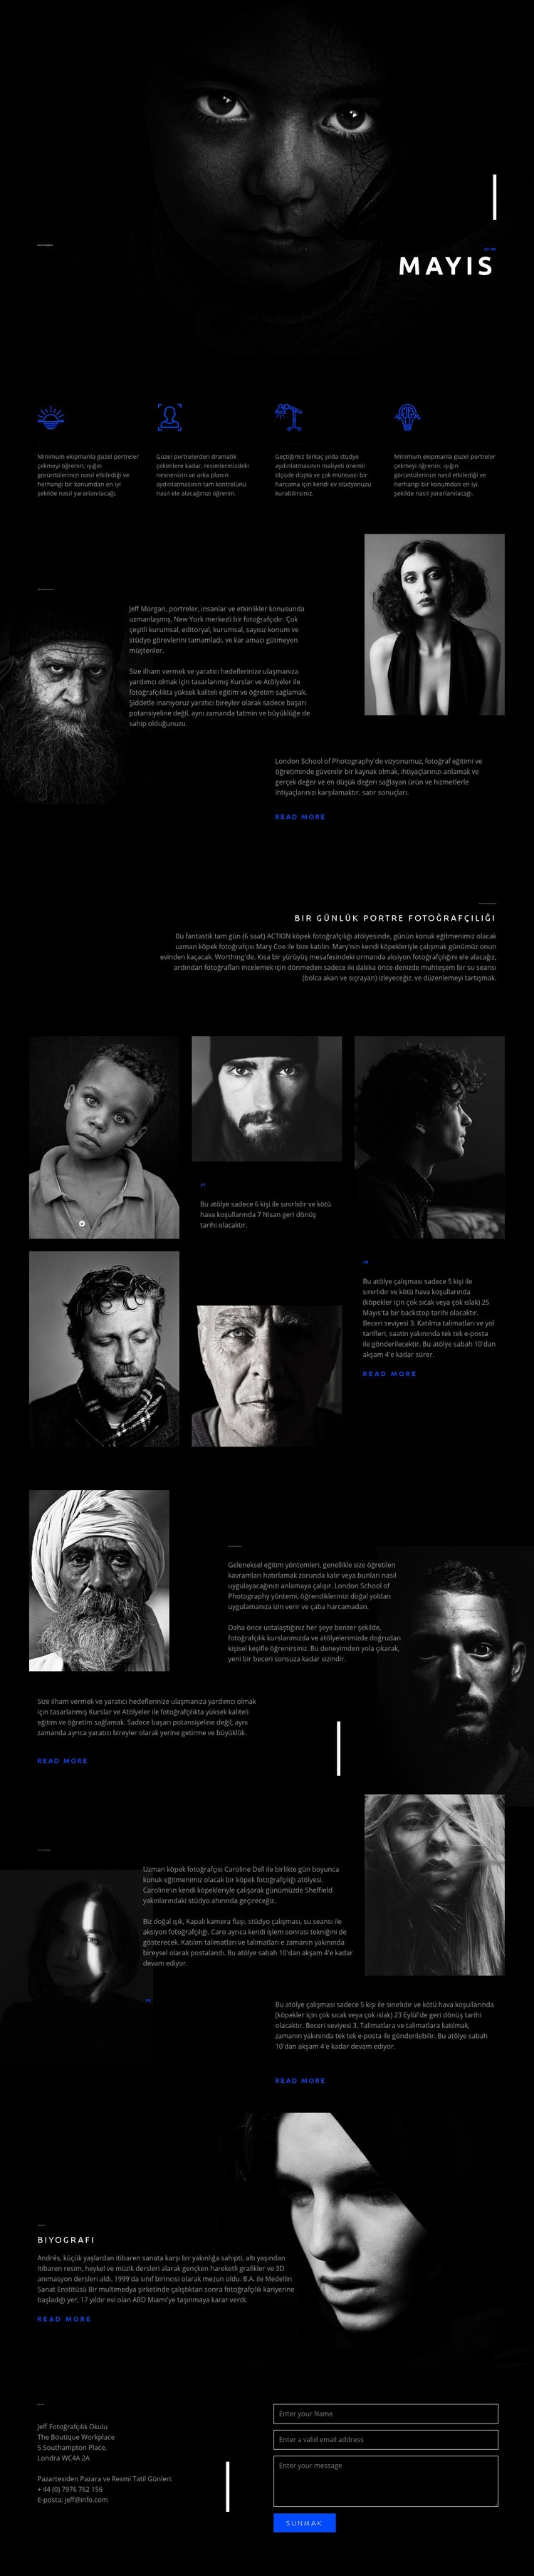 İnanılmaz portre sanatı Web sitesi tasarımı